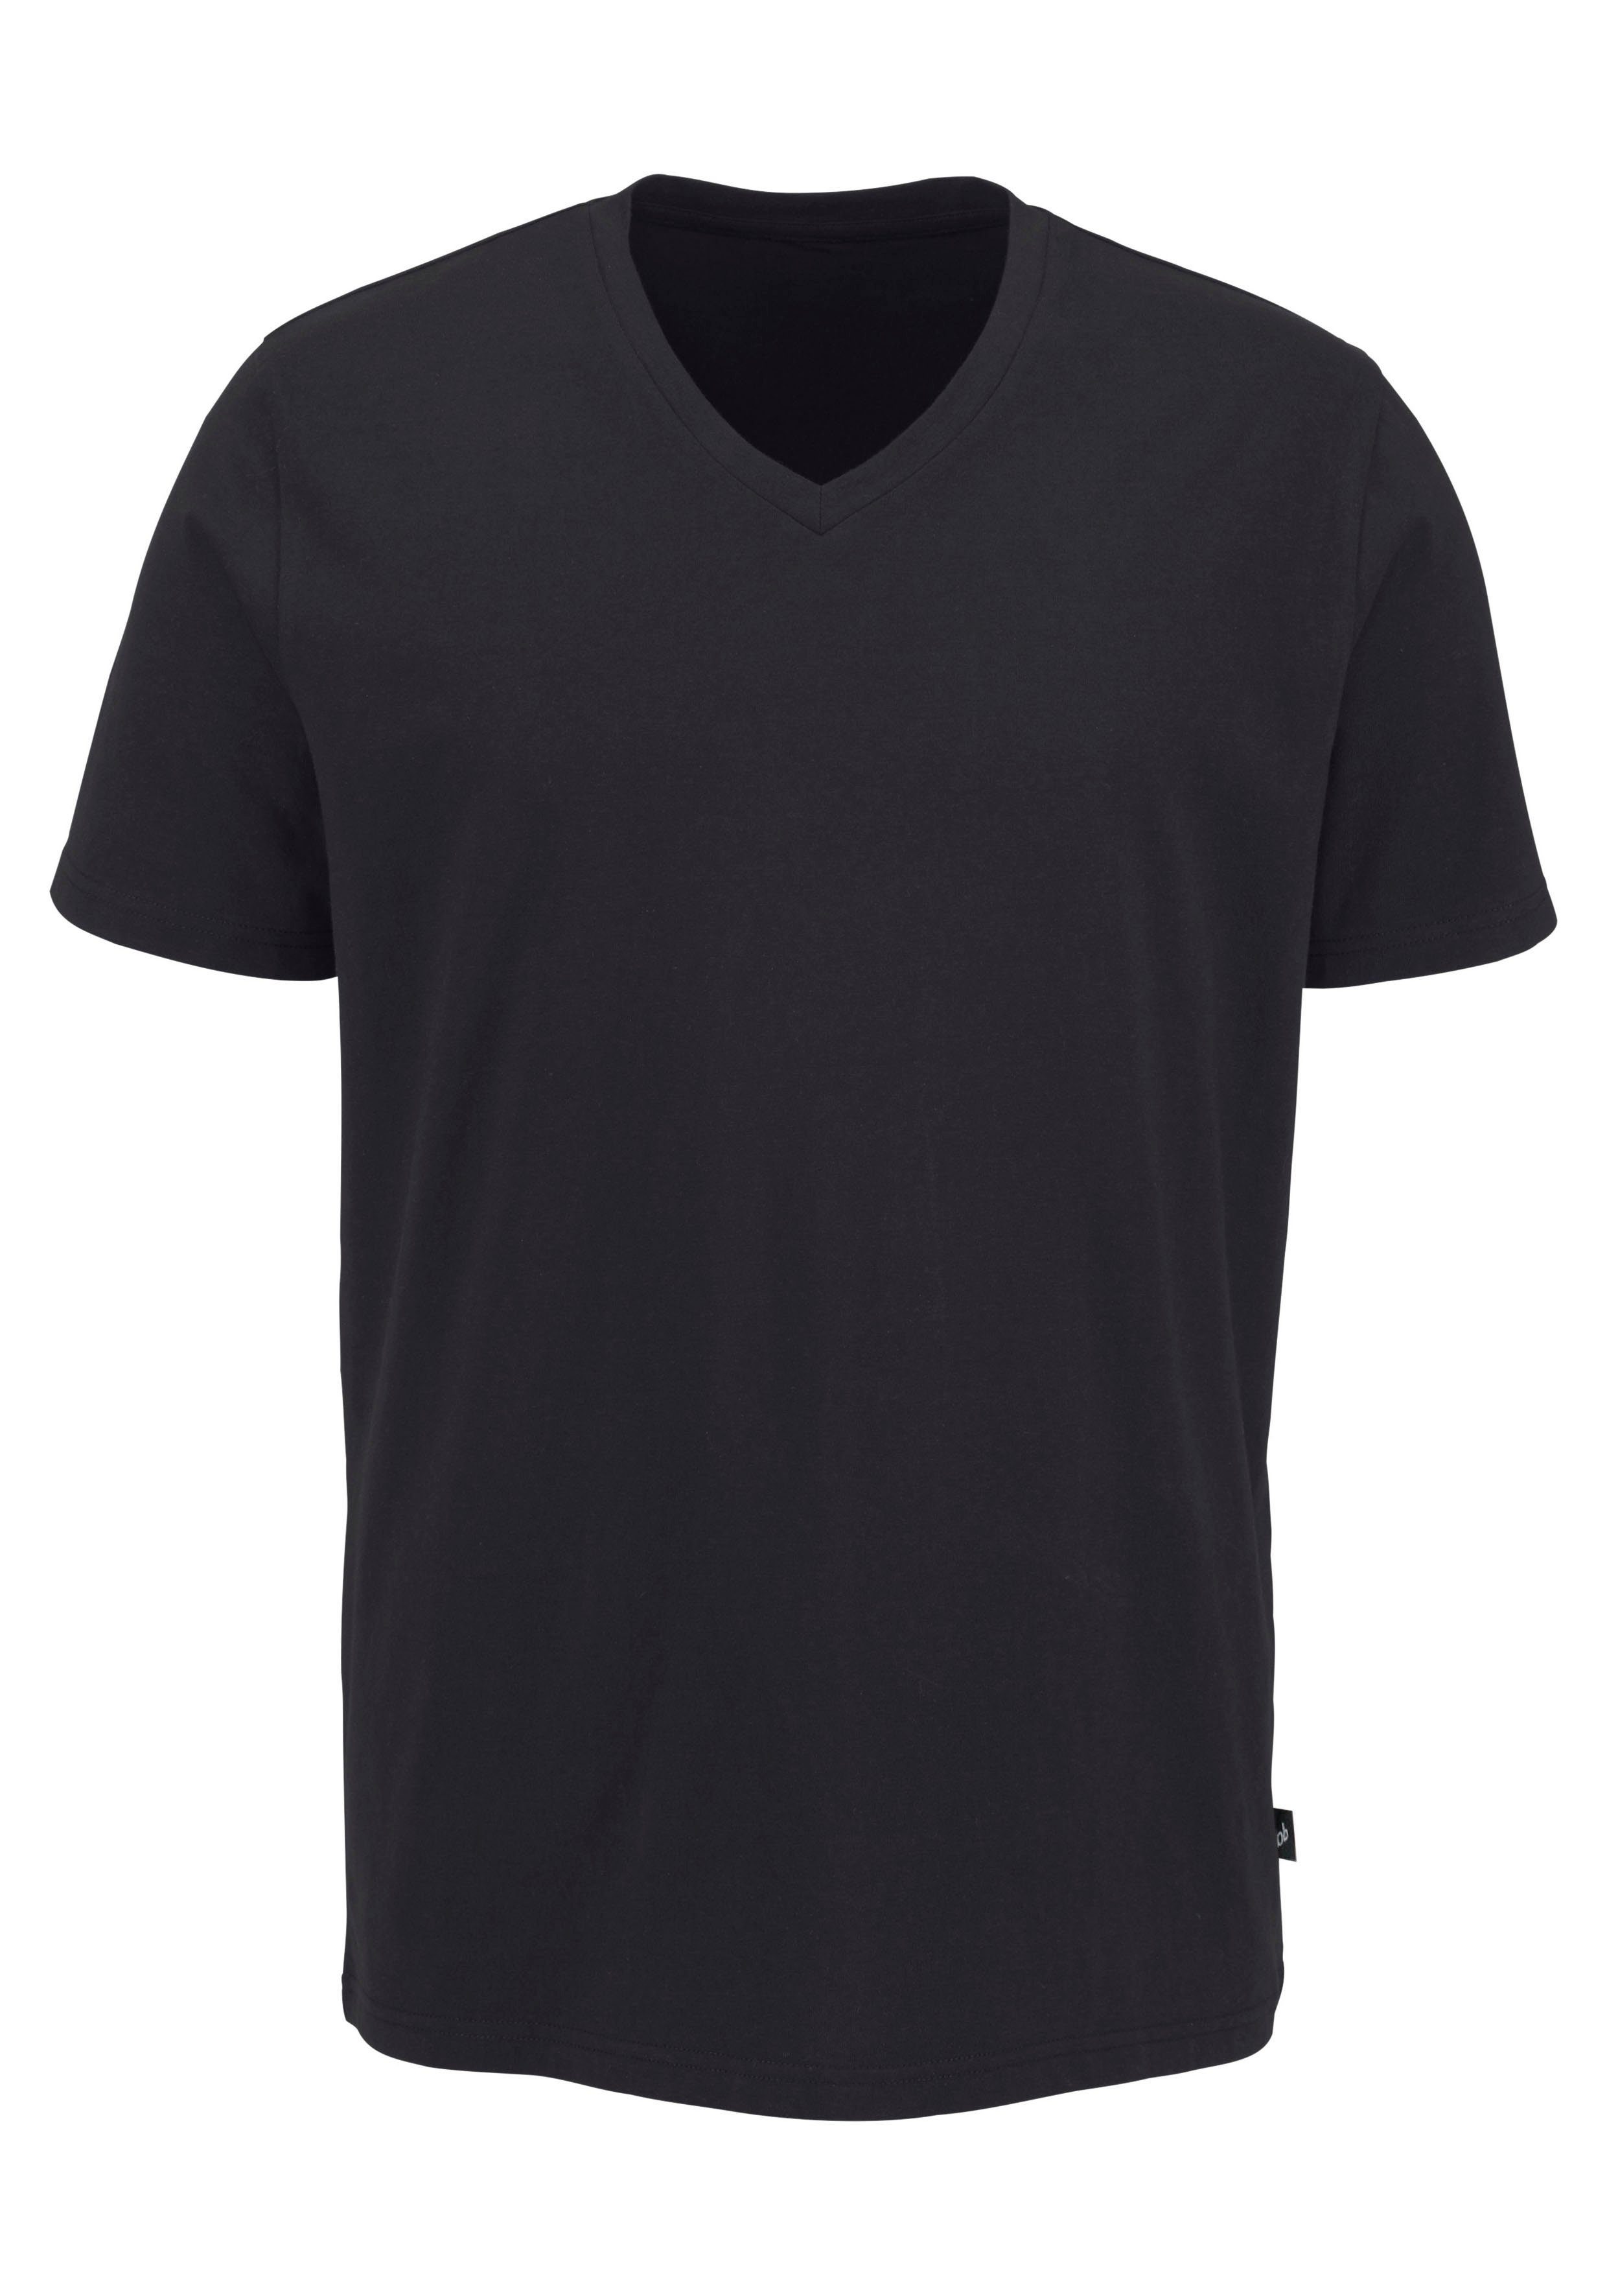 T-Shirt (3-tlg., V-Ausschnitt, elastischer grau-meliert Baumwolle Bruno schwarz, aus Banani 3er-Pack) Passform, weiß, mit perfekte